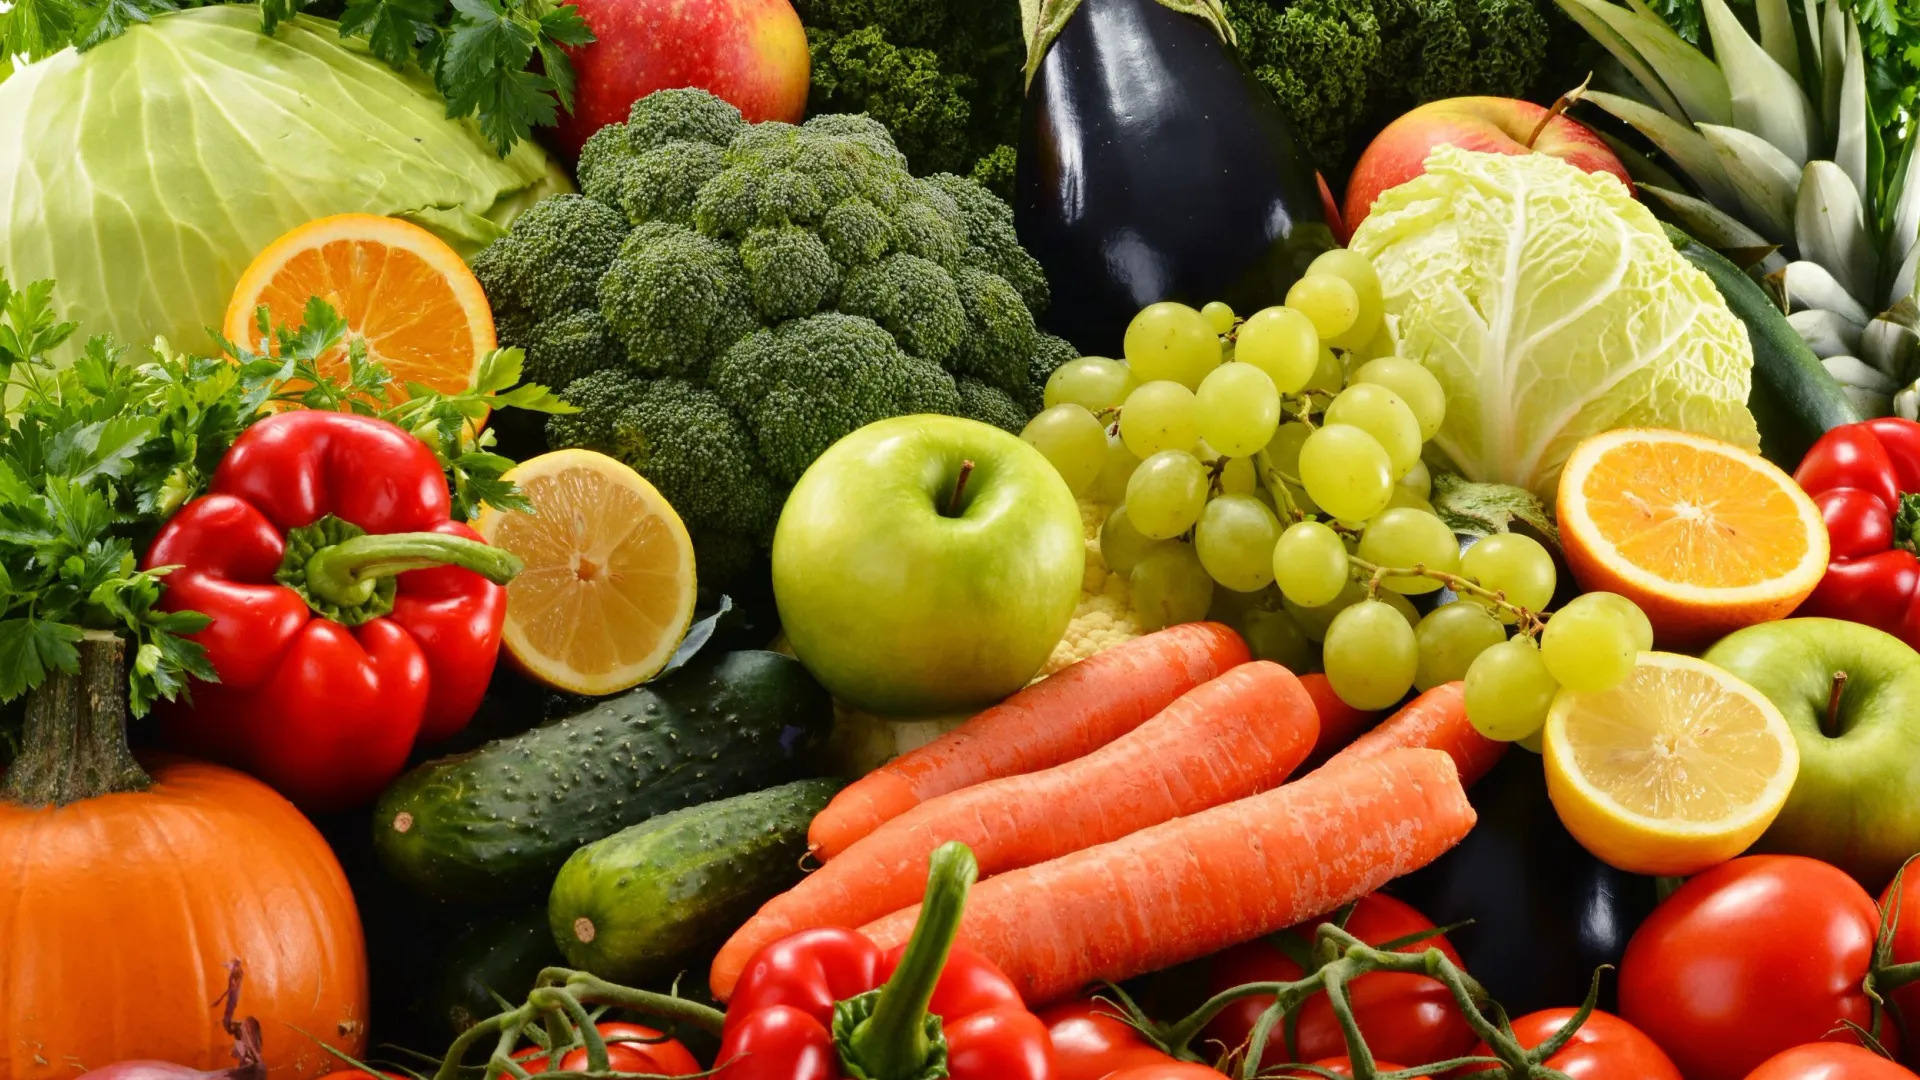 Фрукты и овощи — отличные помощники в борьбе со стрессом. Фото: monticello/Shutterstock/Fotodom